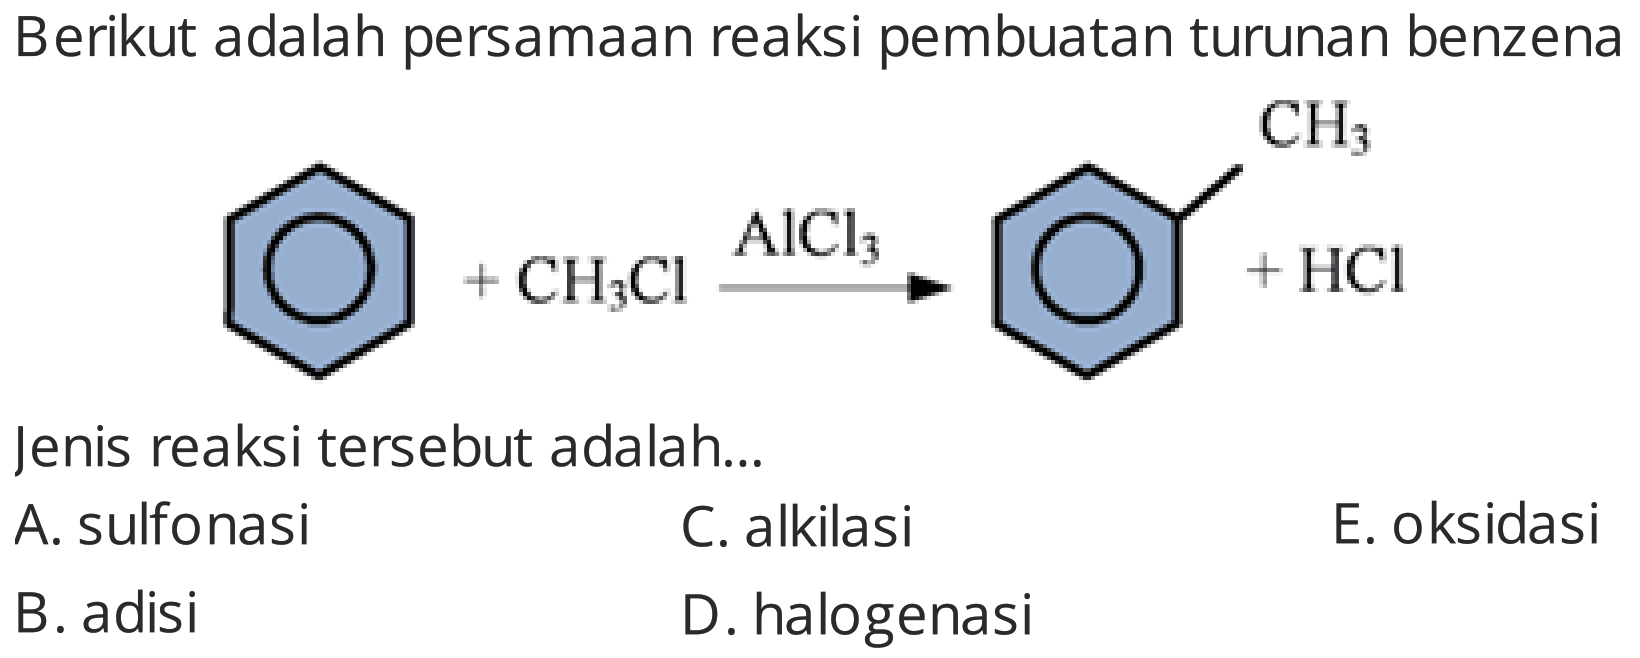 Berikut adalah persamaan reaksi pembuatan turunan benzena
Jenis reaksi tersebut adalah...
A. sulfonasi
C. alkilasi
E. oksidasi
B. adisi
D. halogenasi